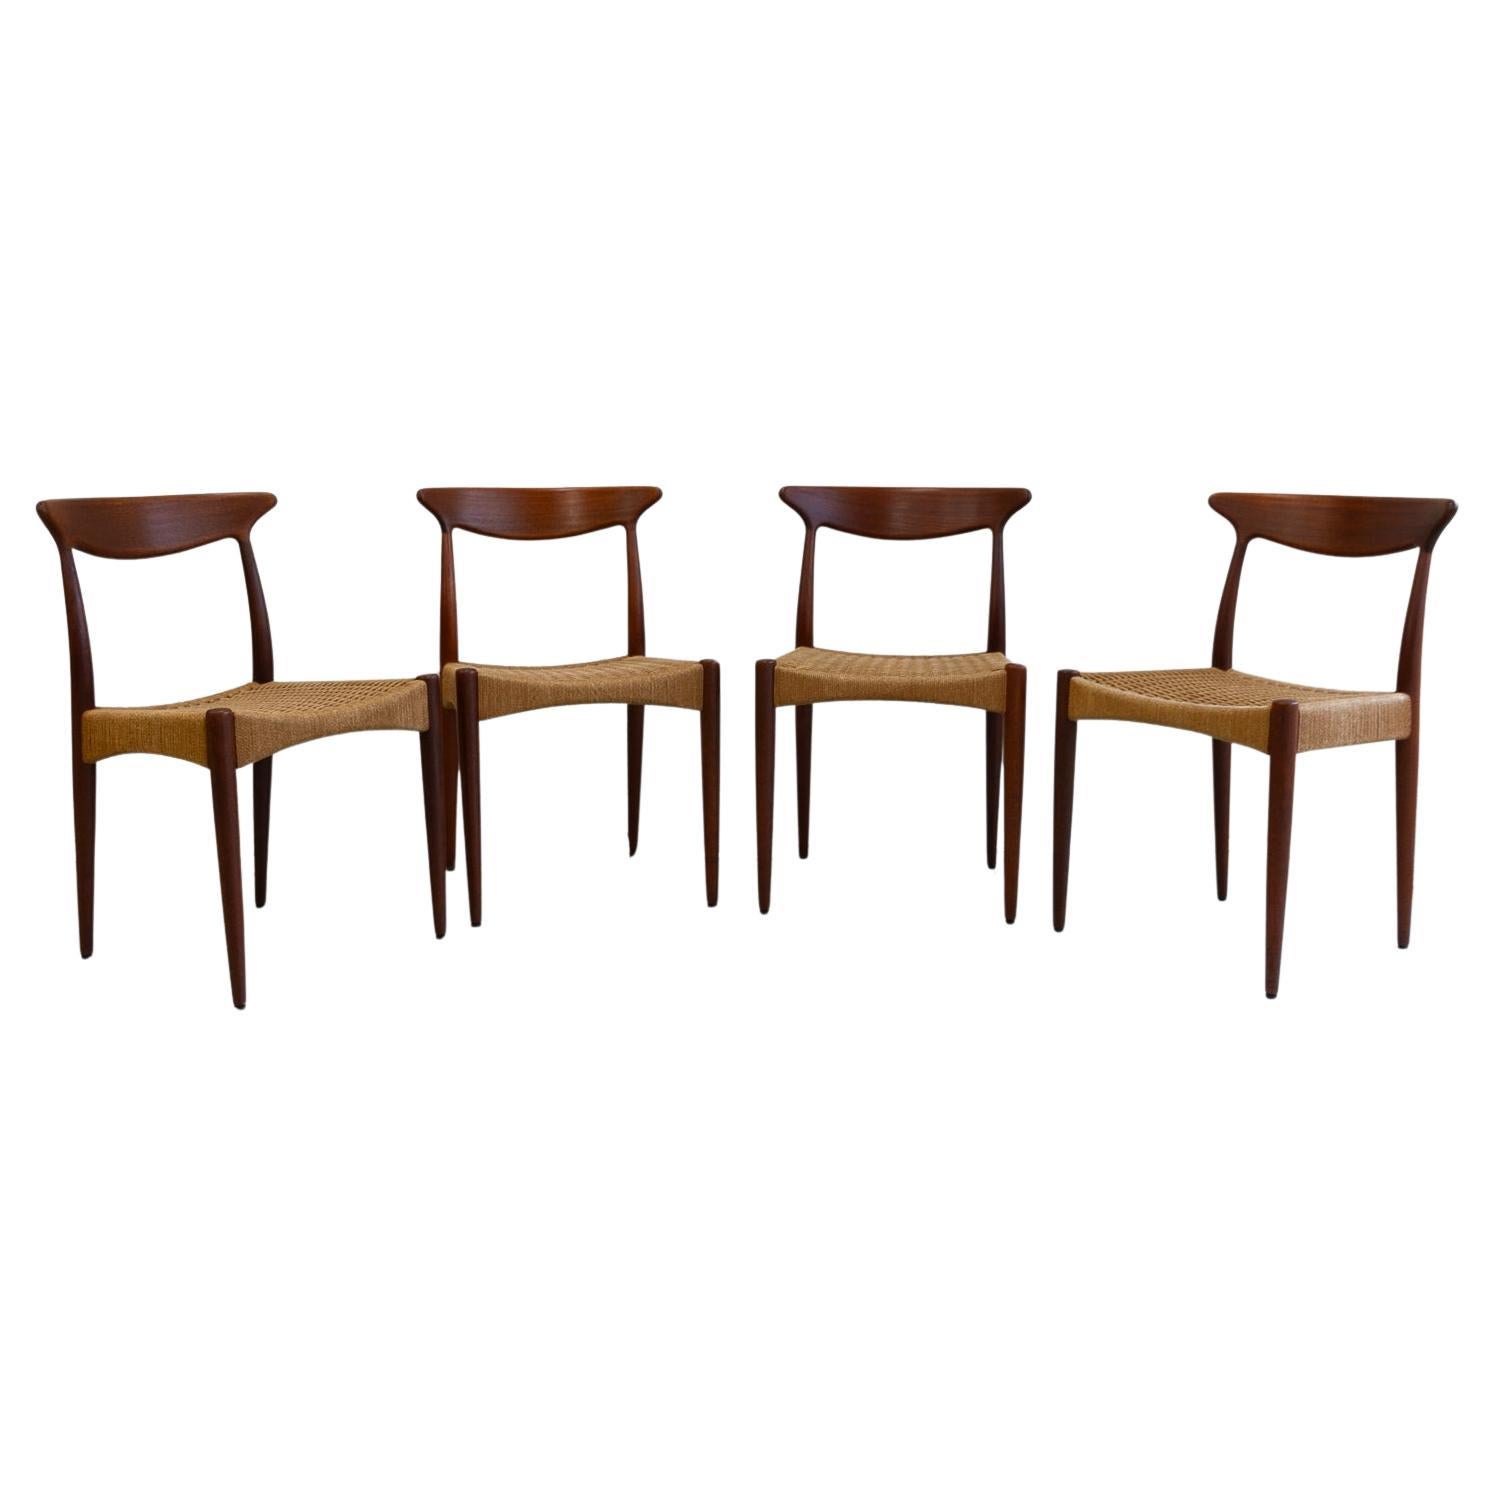 Danish Modern Teak Chairs by Arne Hovmand-Olsen for Mogens Kold, 1950s. Set of 4 For Sale